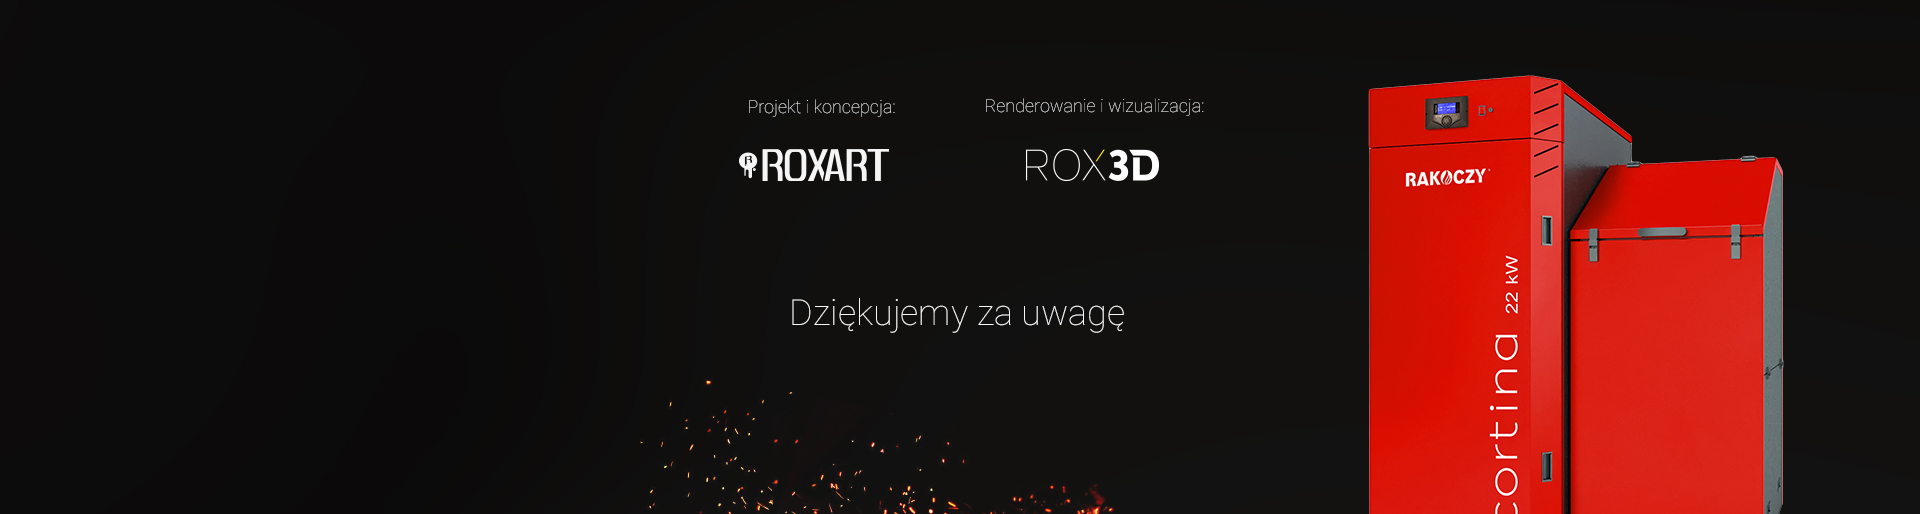 Rakoczy - Realizacja - Agencja ROXART